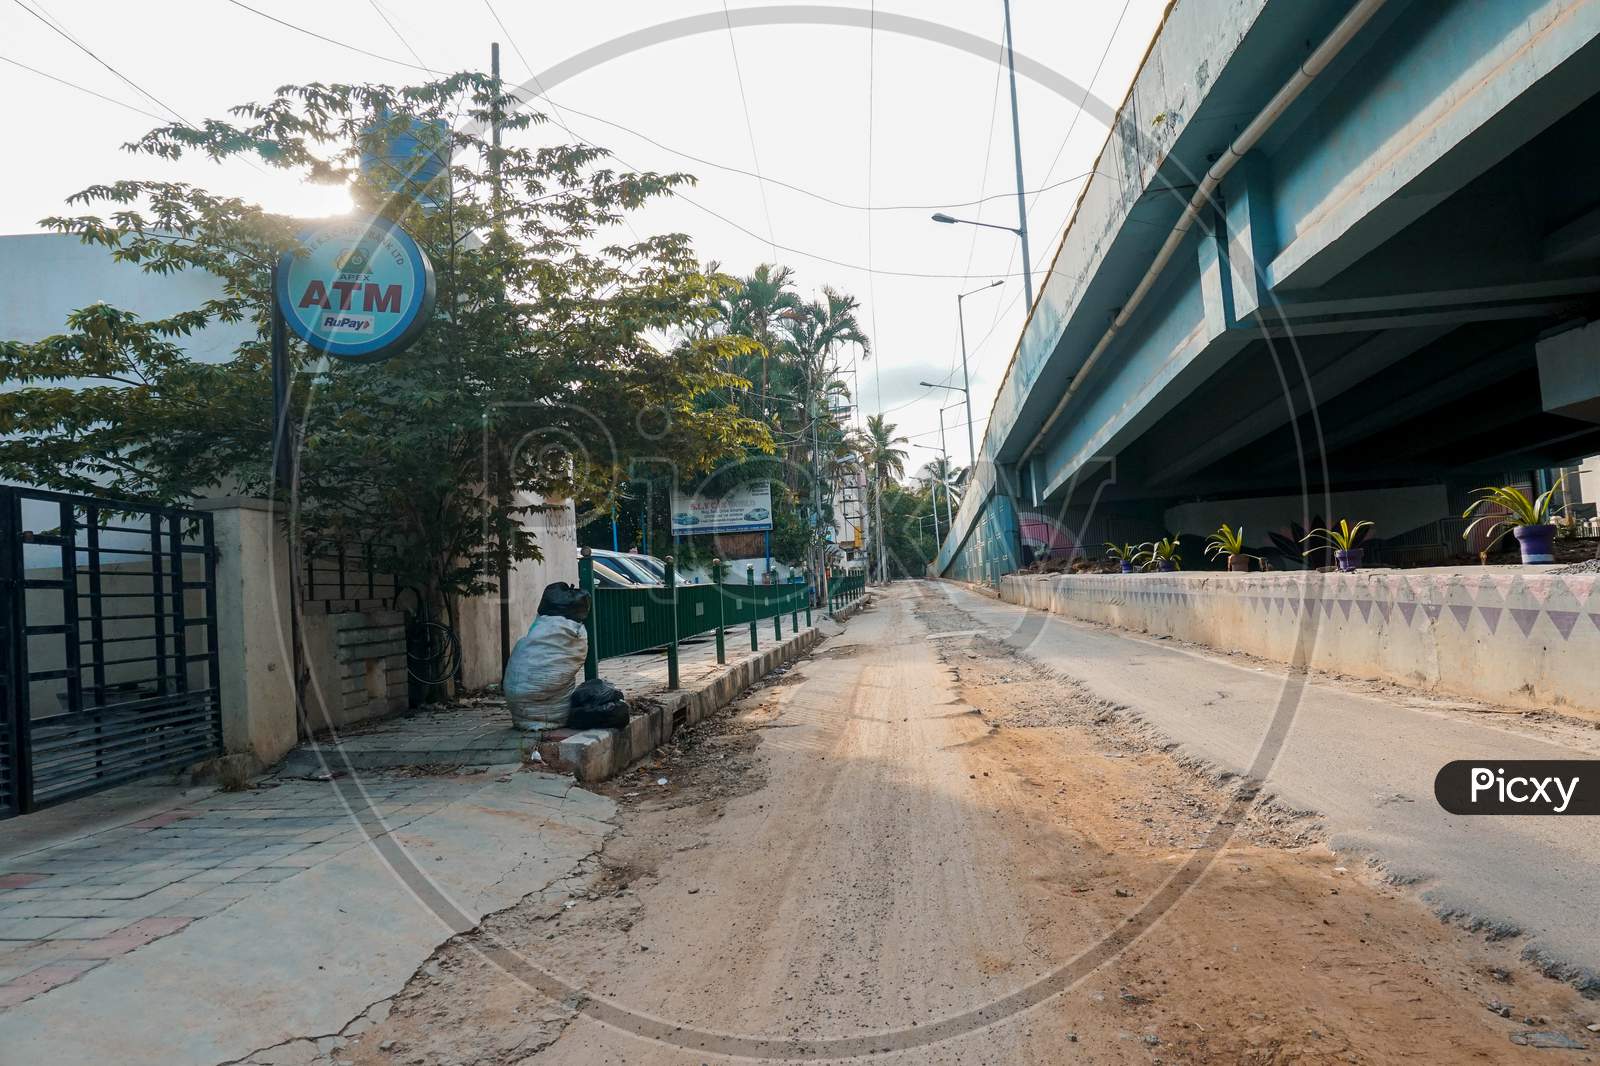 Bengaluru,Karnataka/India- June 01, 2020: Empty street due to corona virus outbreak